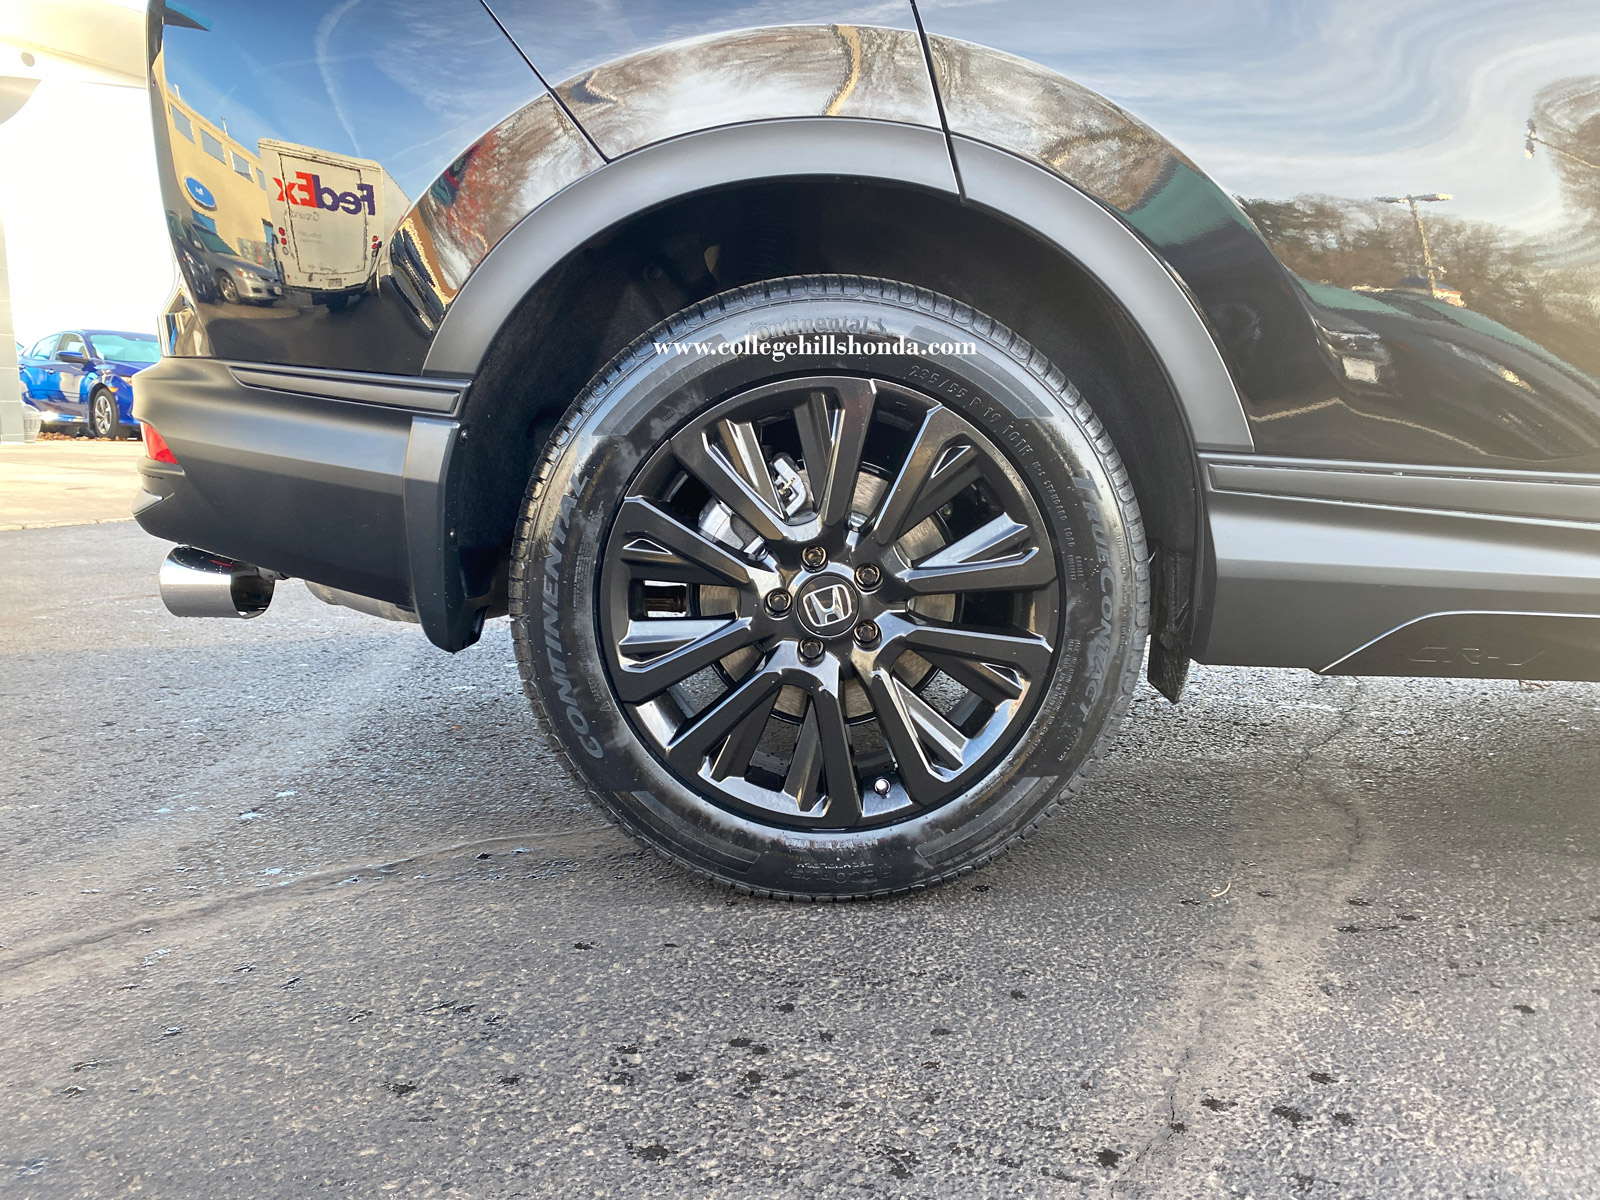 20172022 Honda CRV 19" Gloss Black Alloy Wheel (each) 08W19TLA100A